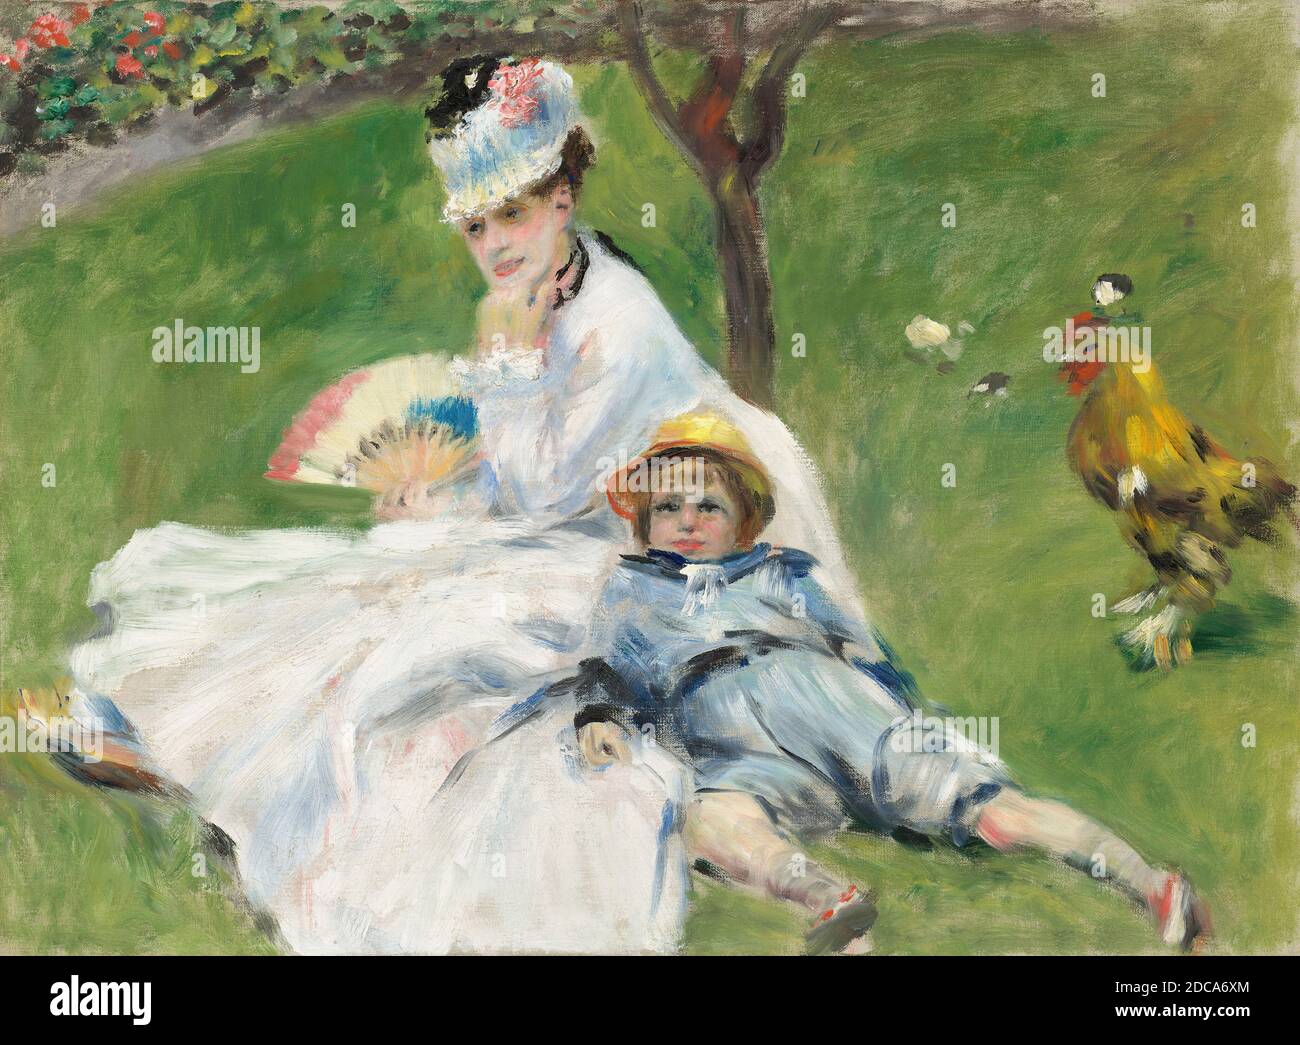 Auguste Renoir, (artiste), Français, 1841 - 1919, Madame Monet et son fils, 1874, huile sur toile, total: 50.4 x 68 cm (19 13/16 x 26 3/4 po.), encadré: 77.4 x 95.5 x 11.4 cm (30 1/2 x 37 5/8 x 4 1/2 po Banque D'Images